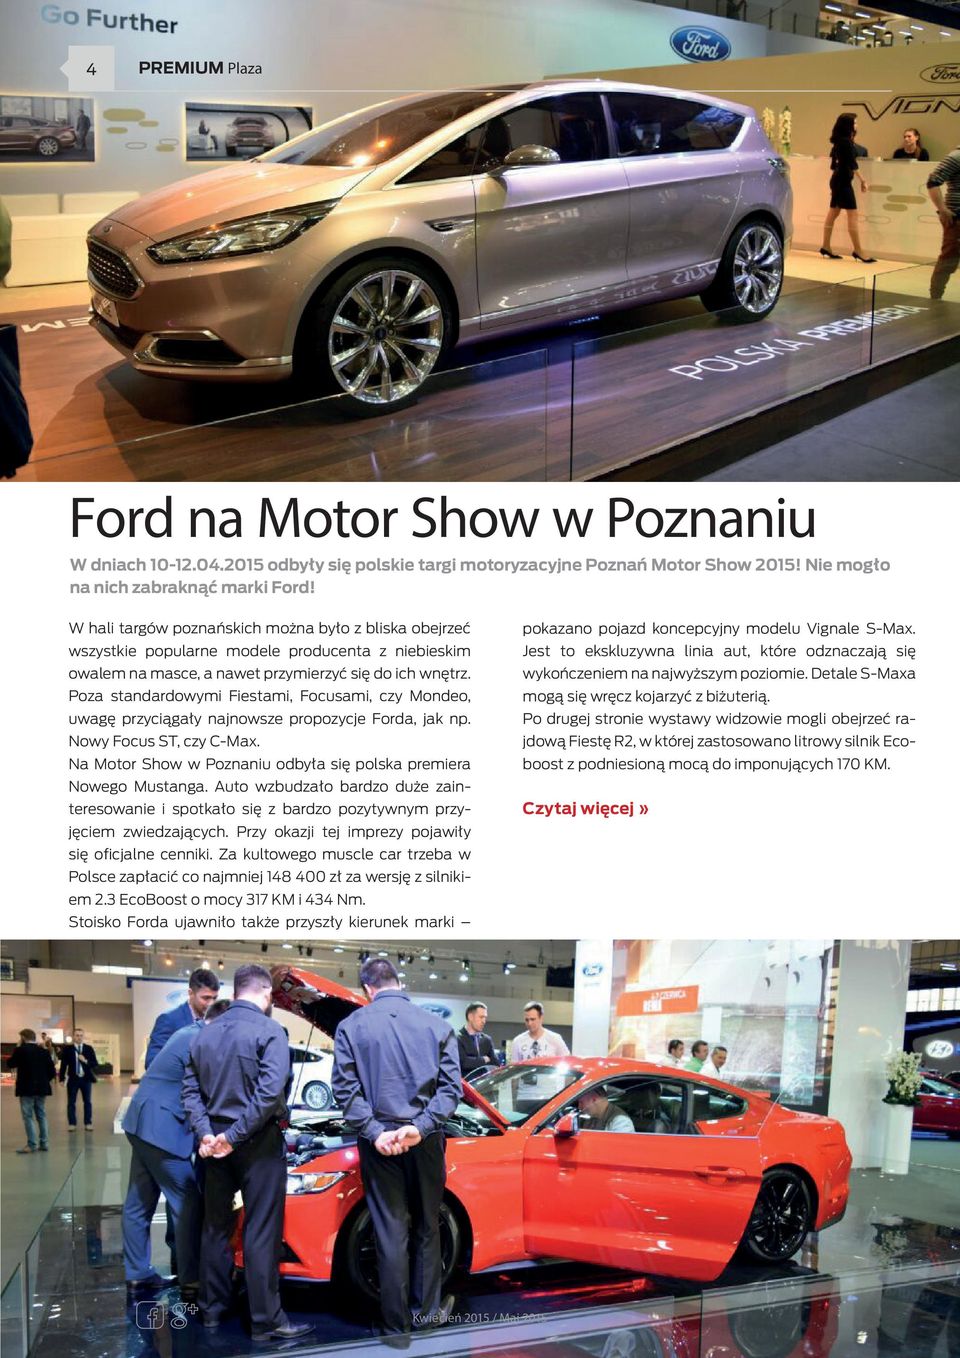 Poza standardowymi Fiestami, Focusami, czy Mondeo, uwagę przyciągały najnowsze propozycje Forda, jak np. Nowy Focus ST, czy C-Max. Na Motor Show w Poznaniu odbyła się polska premiera Nowego Mustanga.